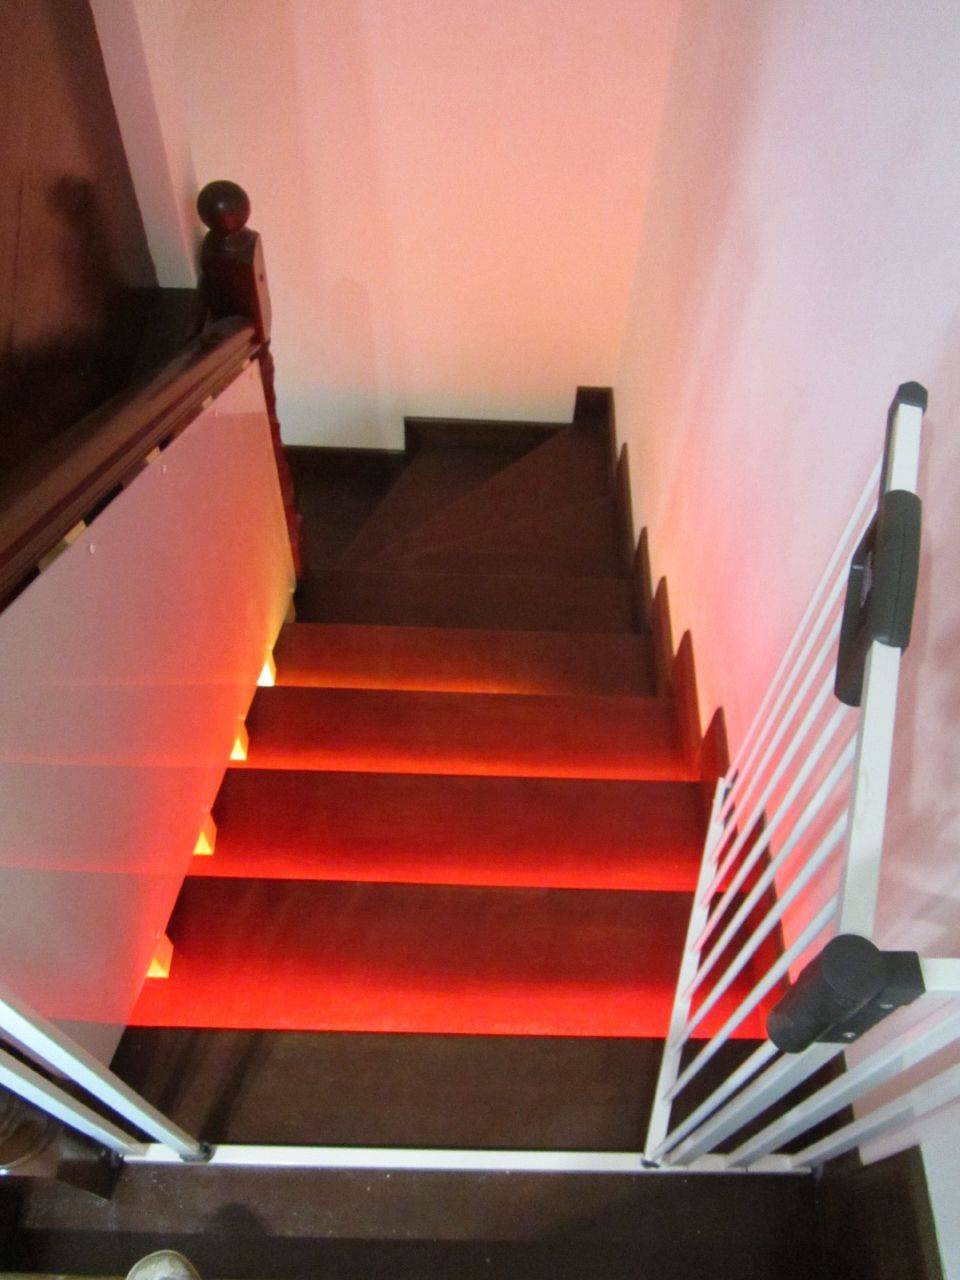 Преимущества умной подсветки лестницы с датчиками движения